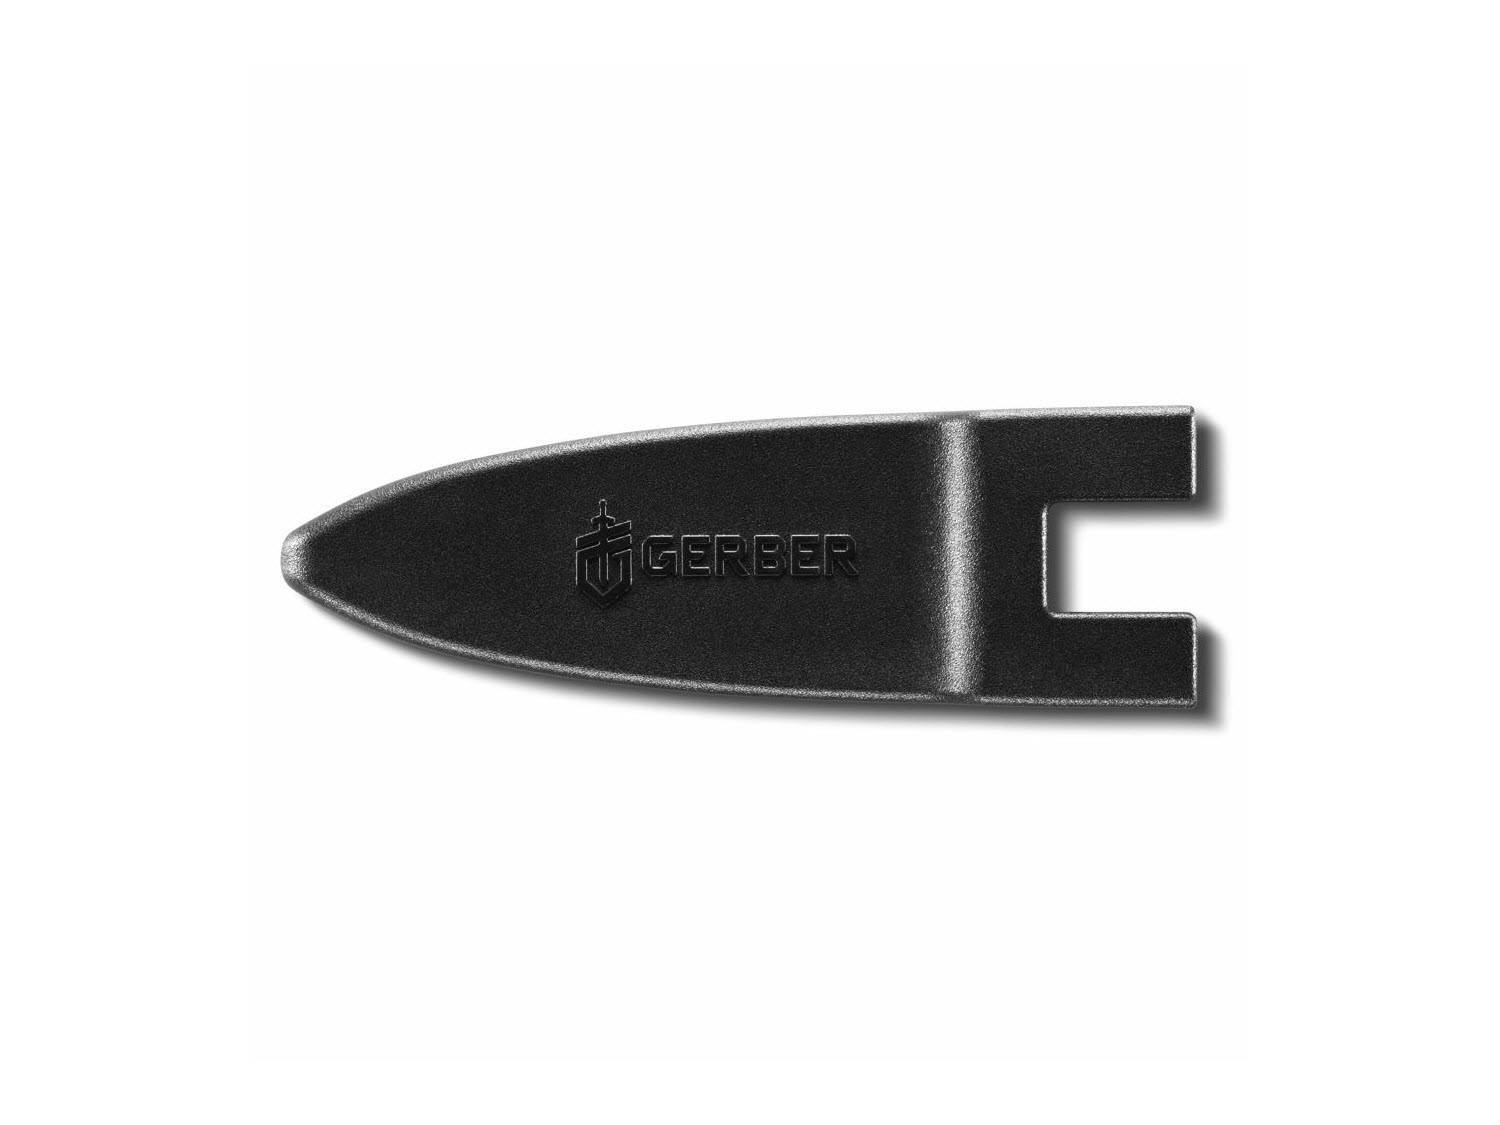 Safety - Gerber River Shorty Knife